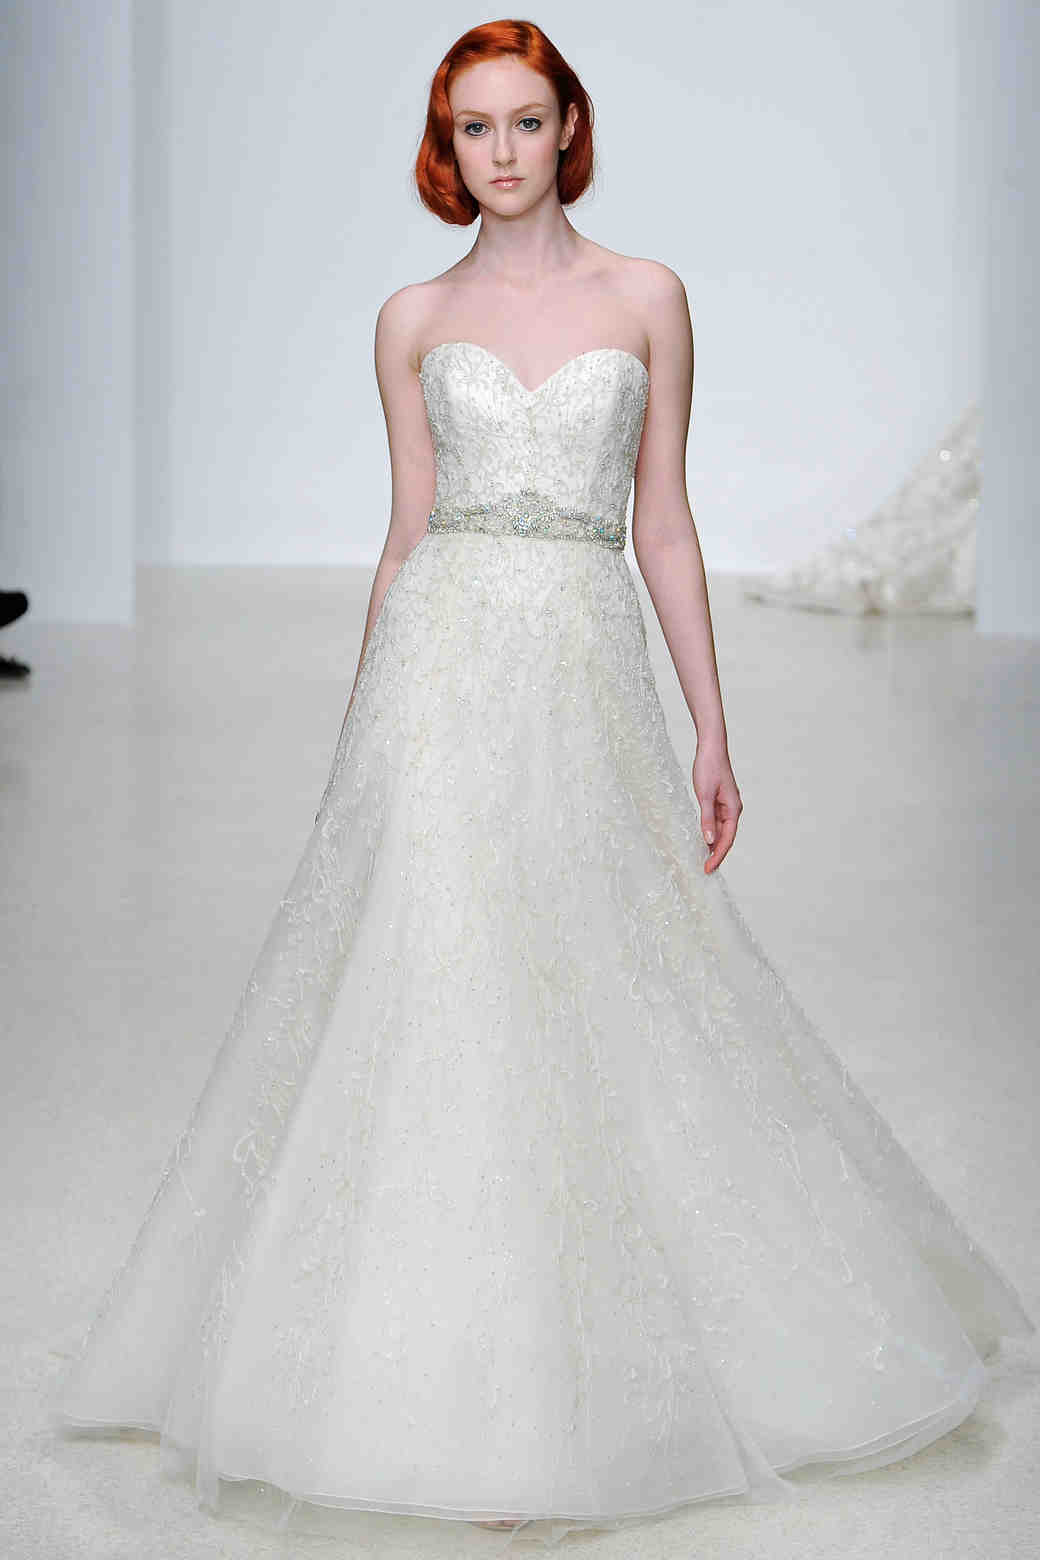 A-Line Wedding Dresses from Spring 2013 Bridal Fashion Week | Martha ...